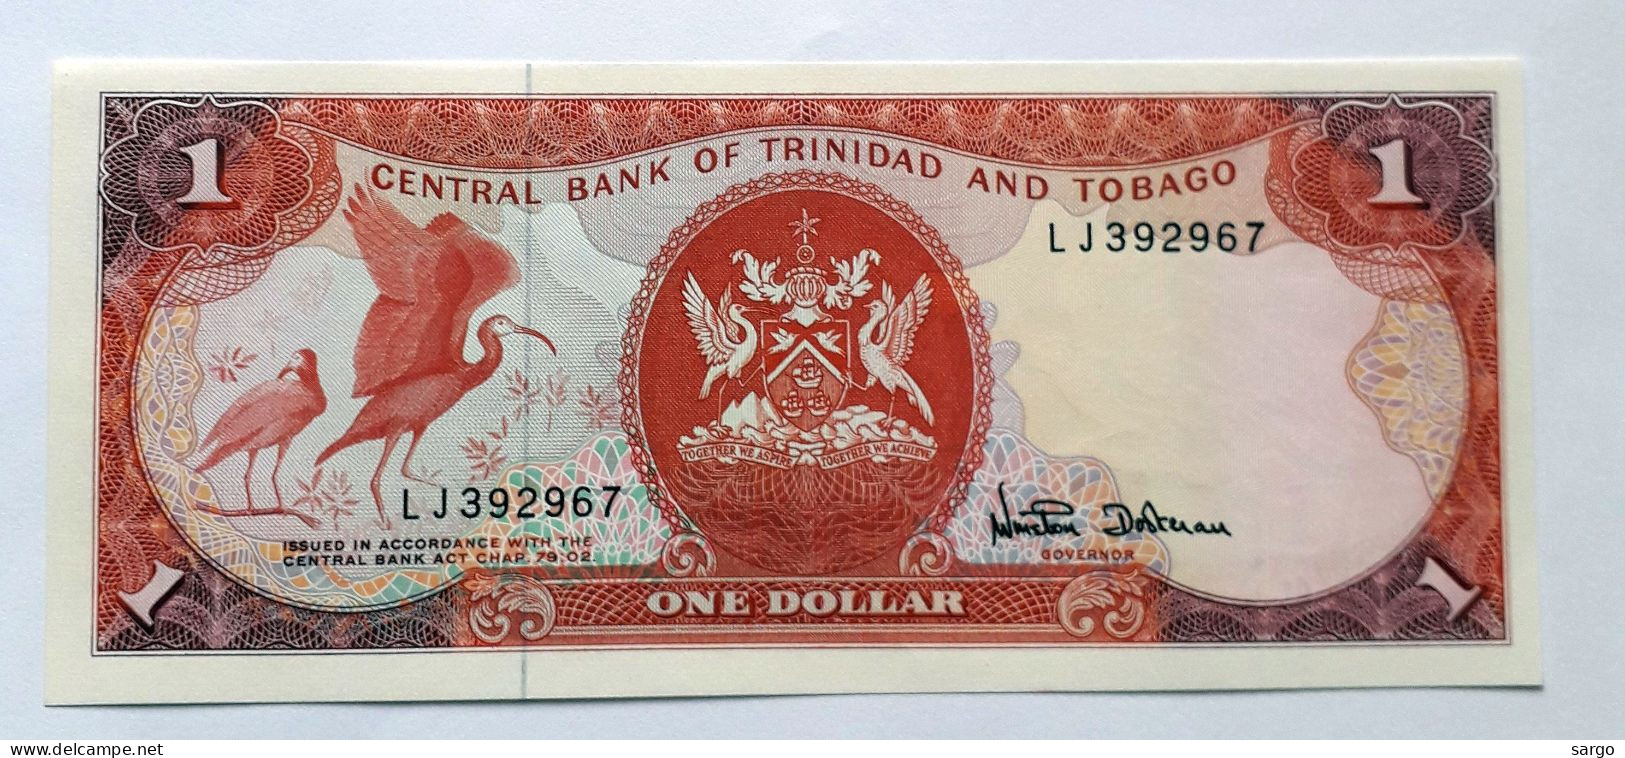 TRINIDAD AND TOBAGO  - 1 DOLLAR  - P 36  (1985) - UNC -  BANKNOTES - PAPER MONEY - Trinidad Y Tobago